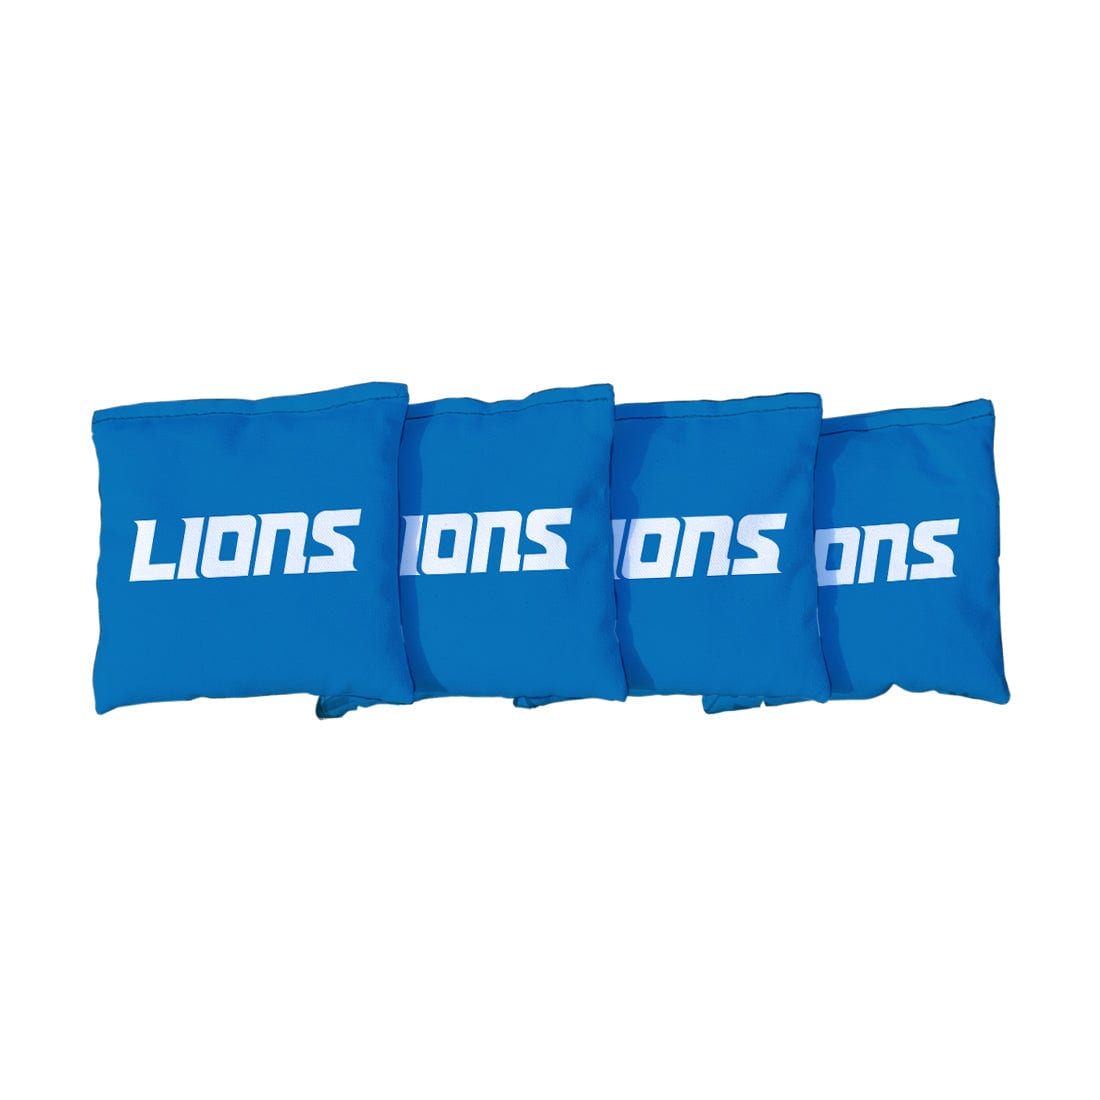 Detroit Lions NFL Football Blue Cornhole Bags